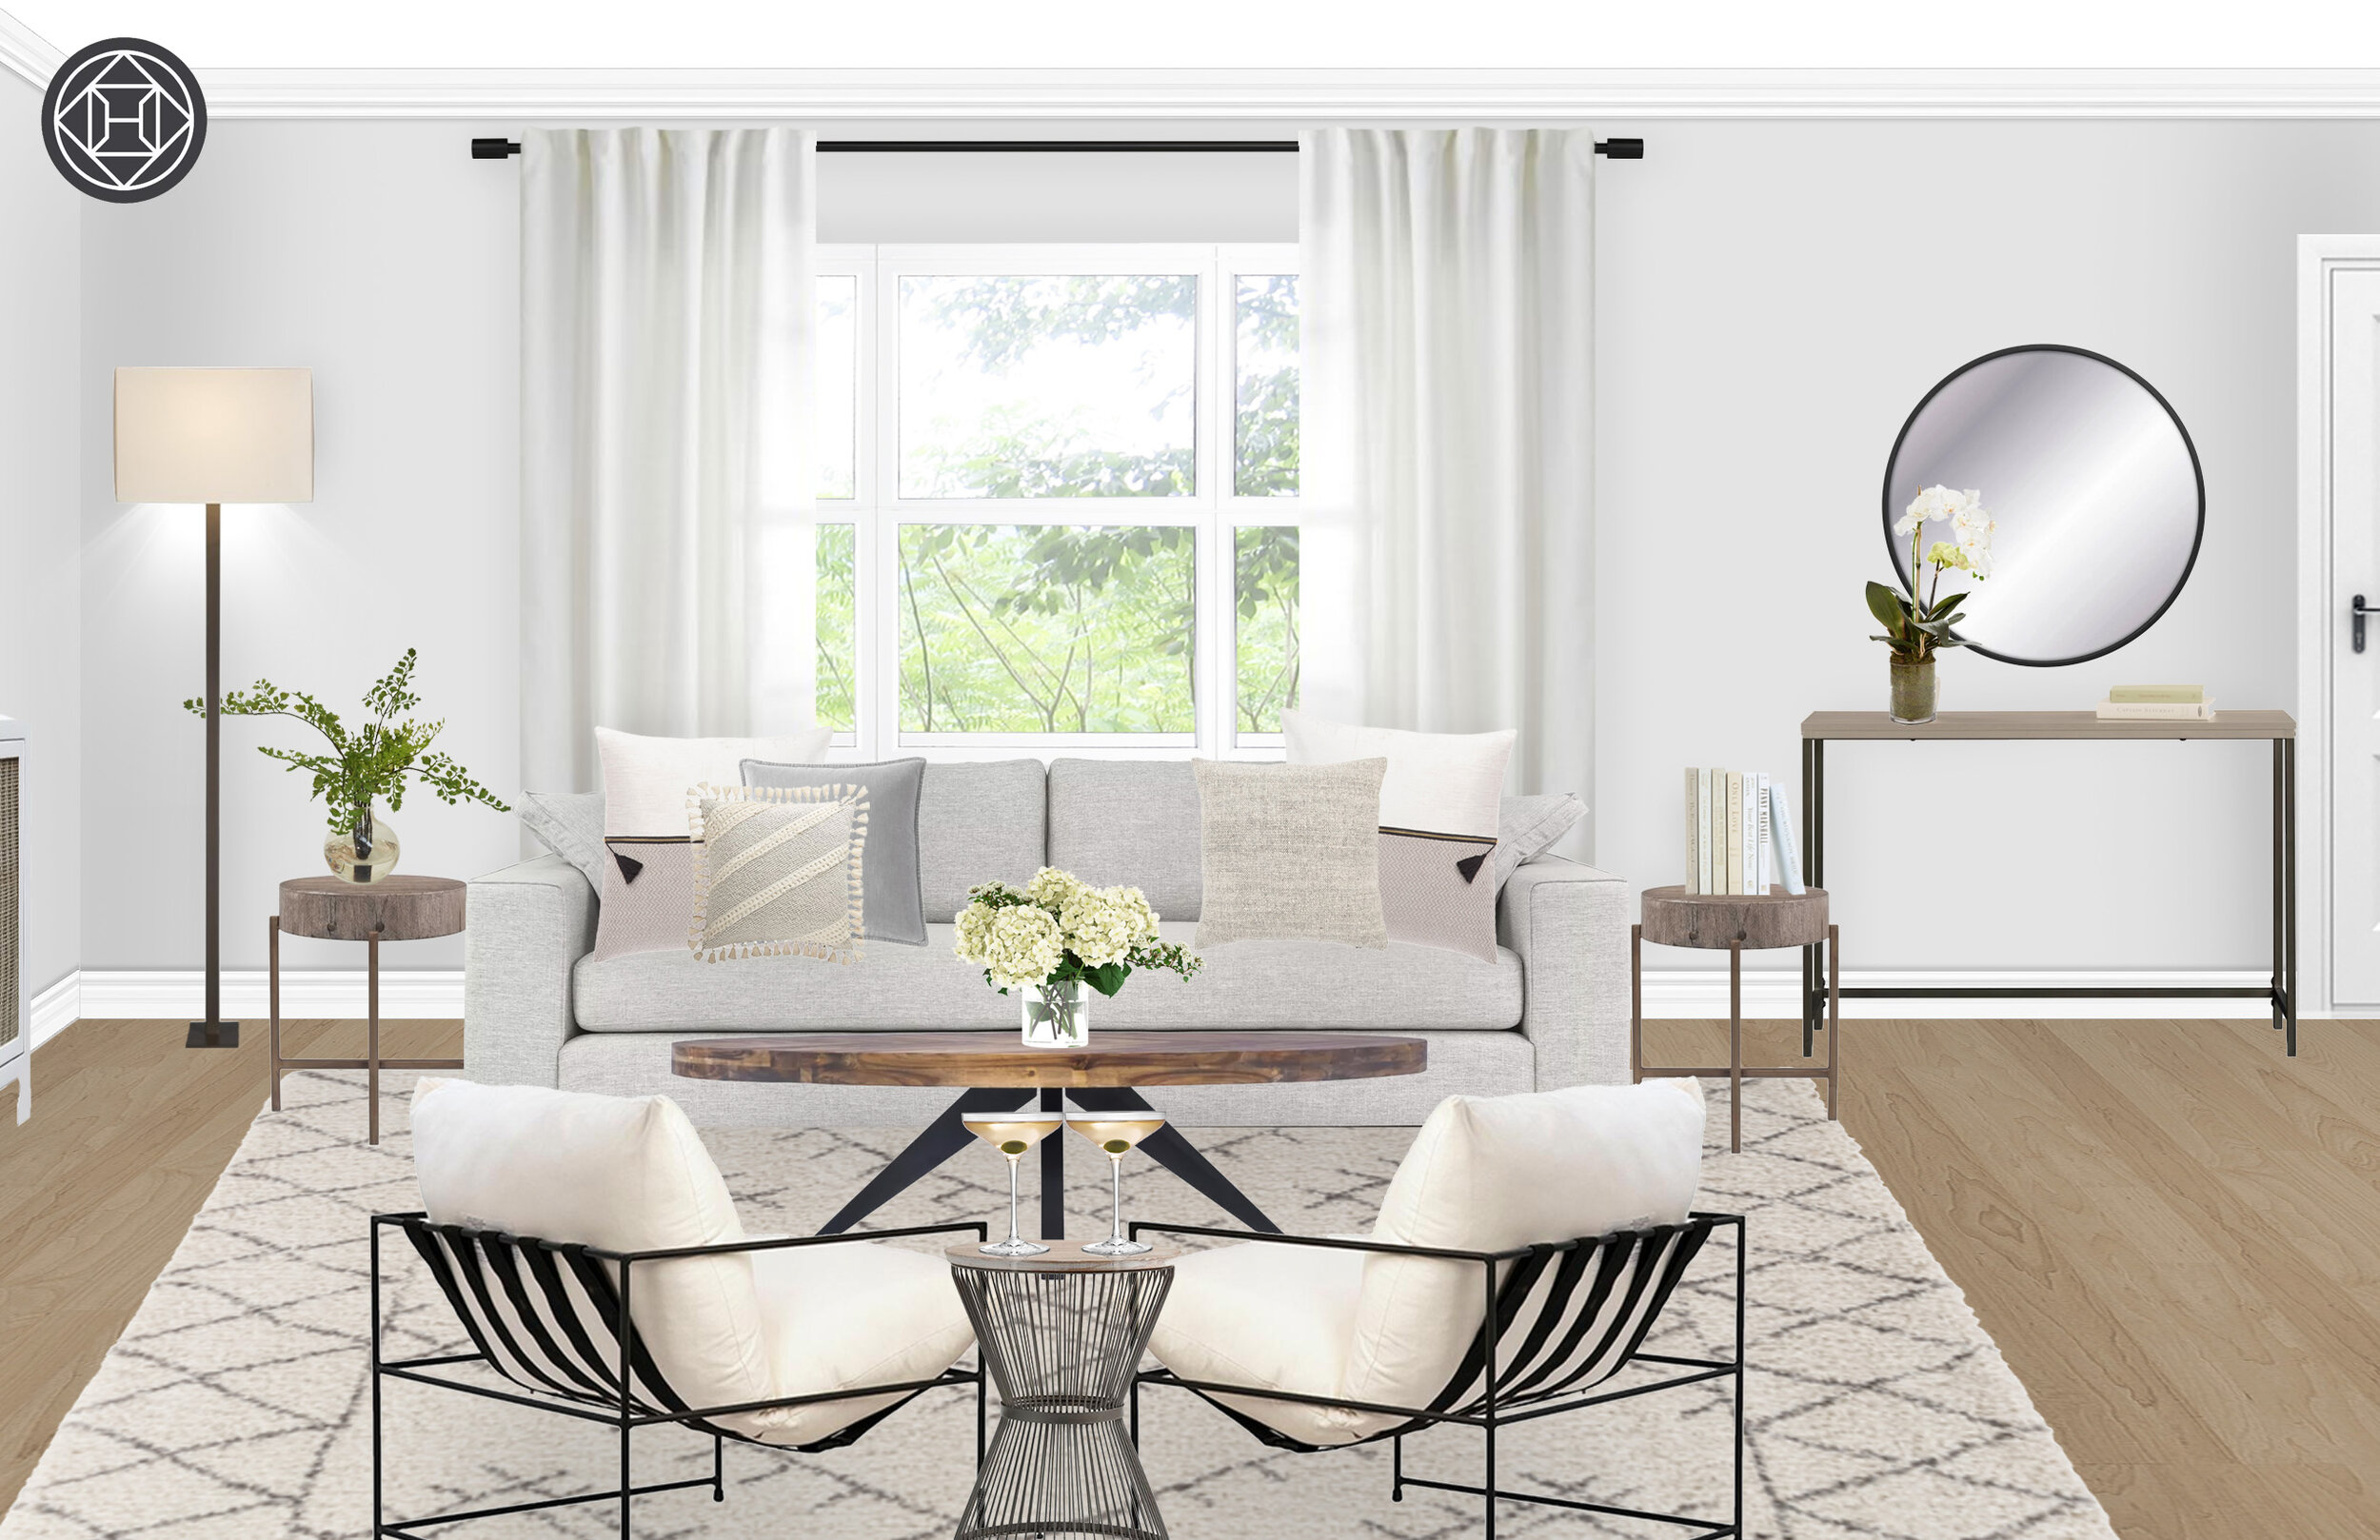 The Inspired Abode // Living Room E-Design